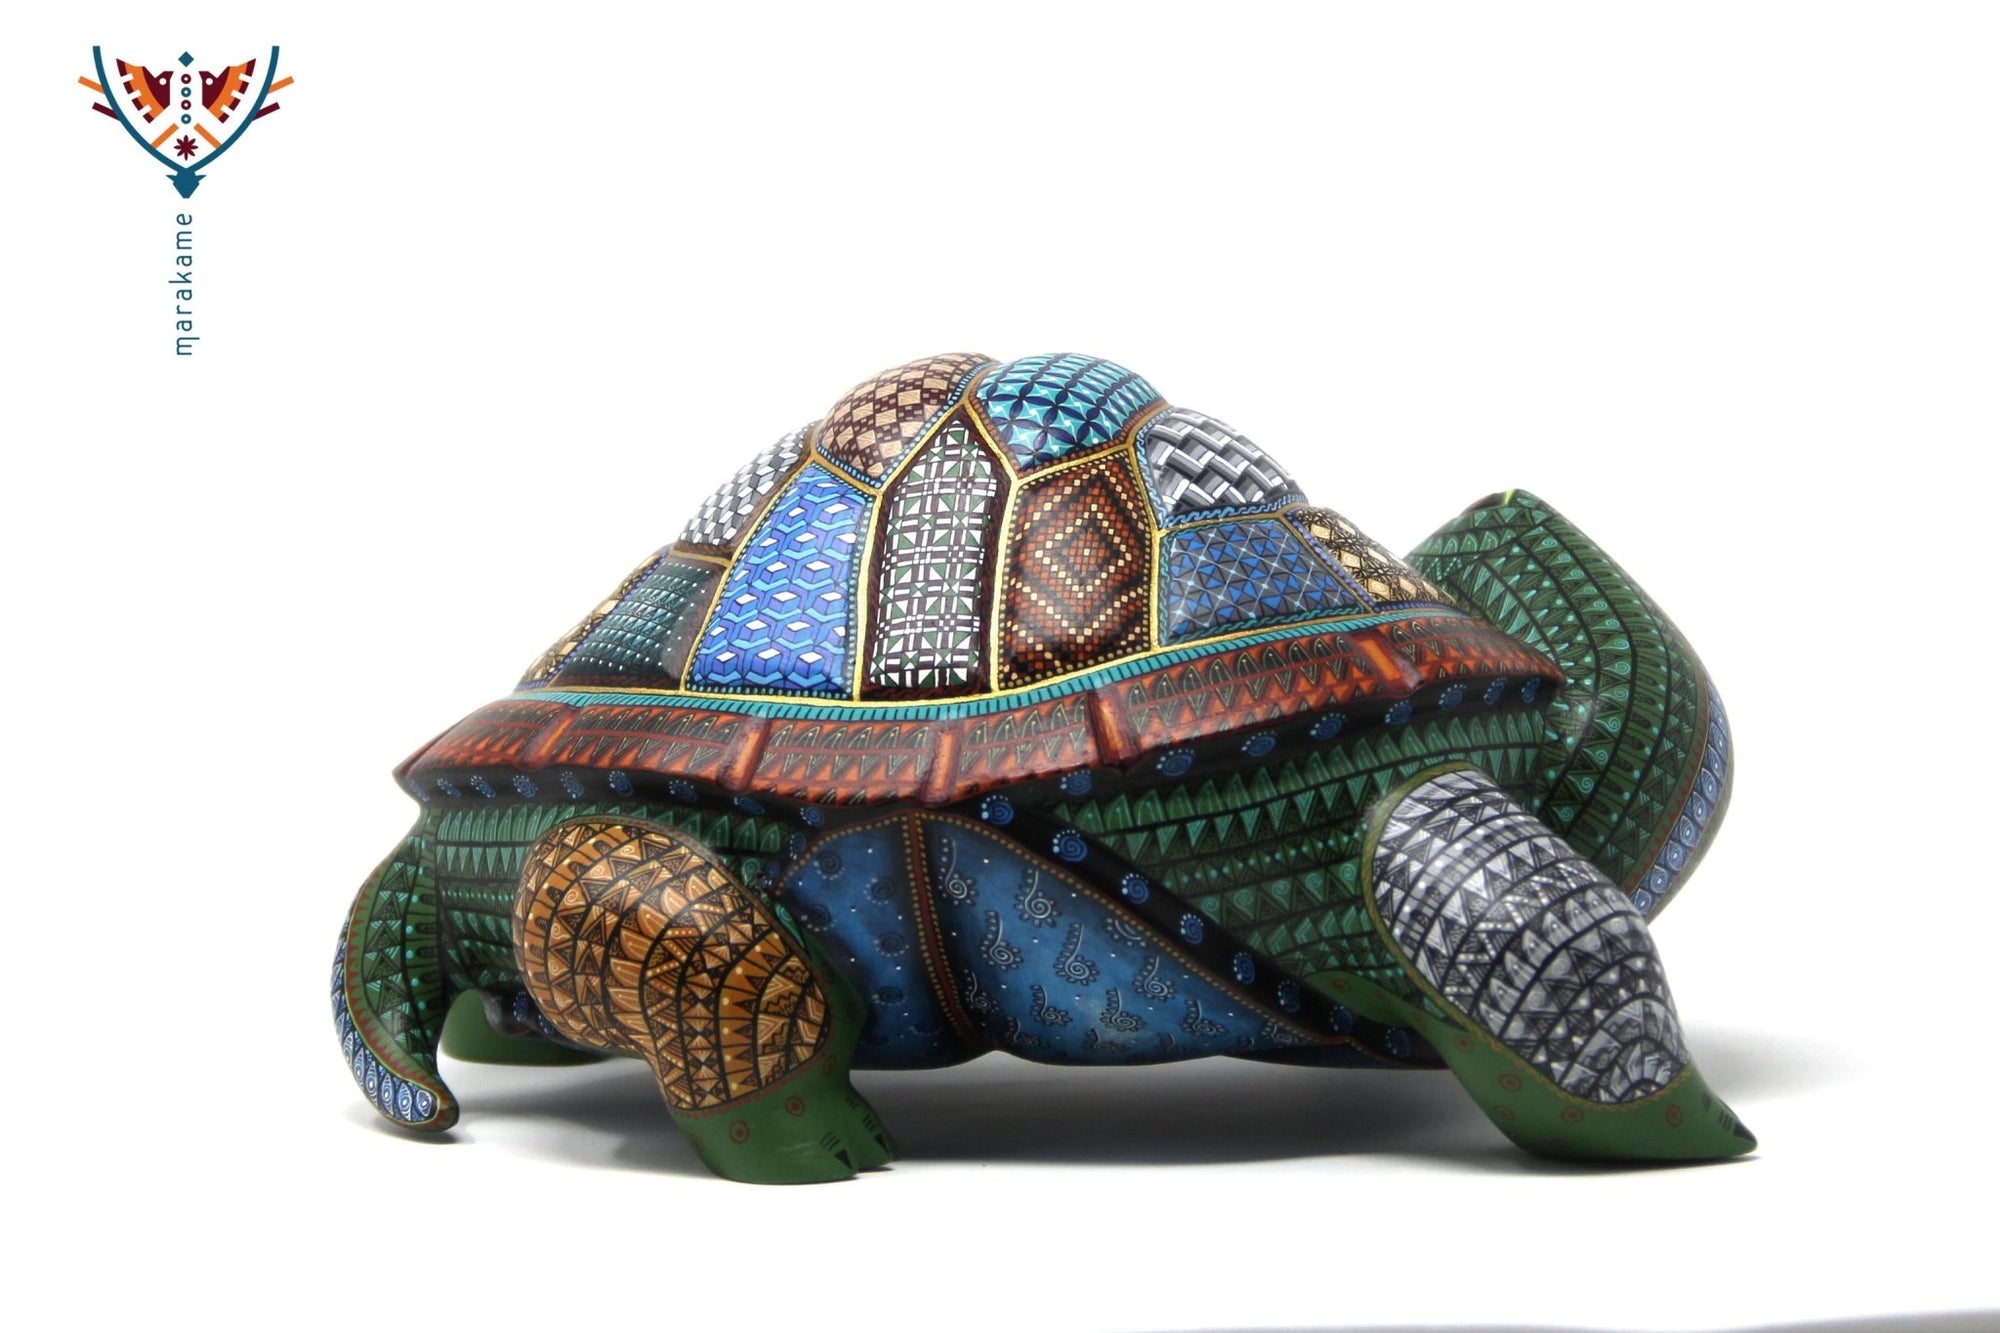 Turtle Alebrije - Bigu - Huichol Art - Marakame